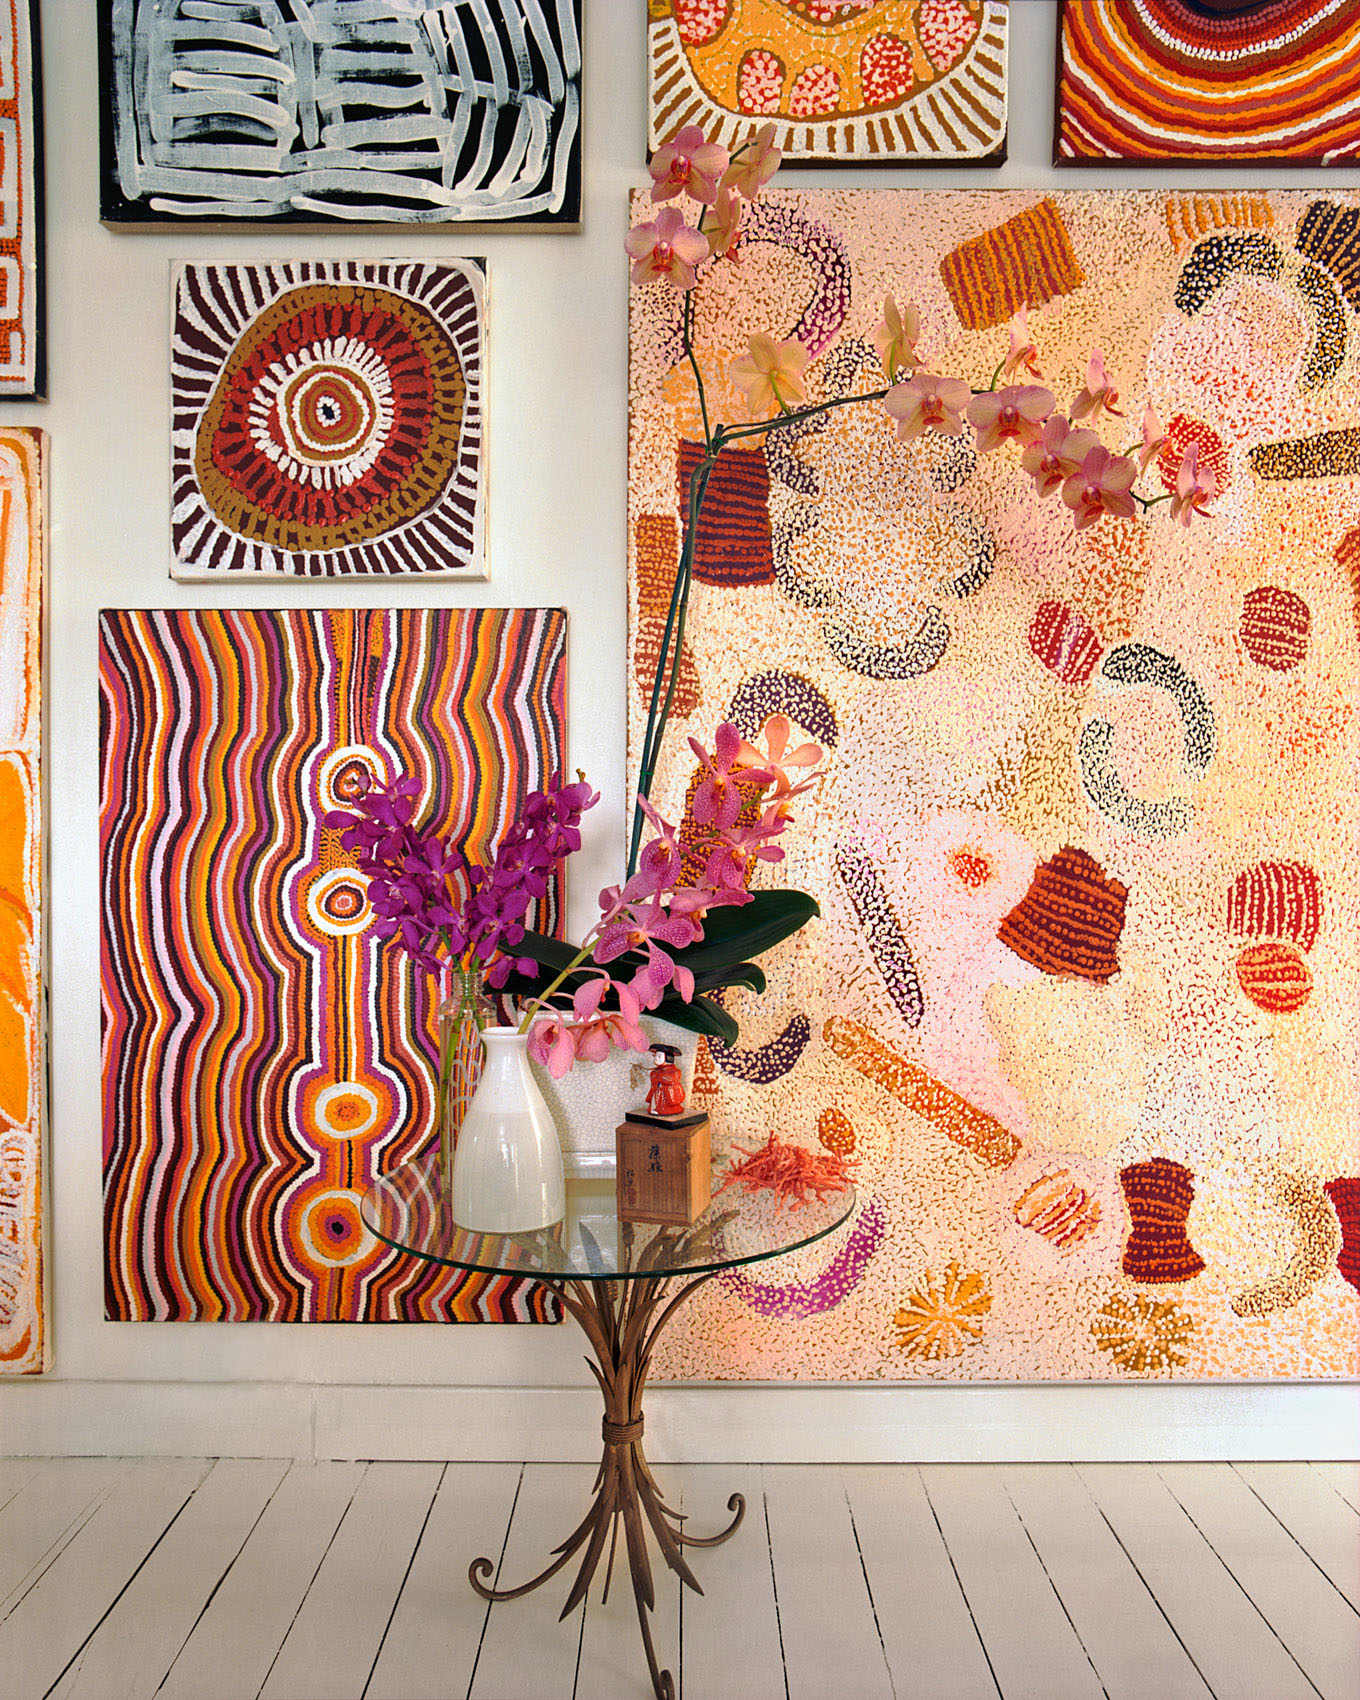 061025-48 Aboriginal art in Sydney apartment